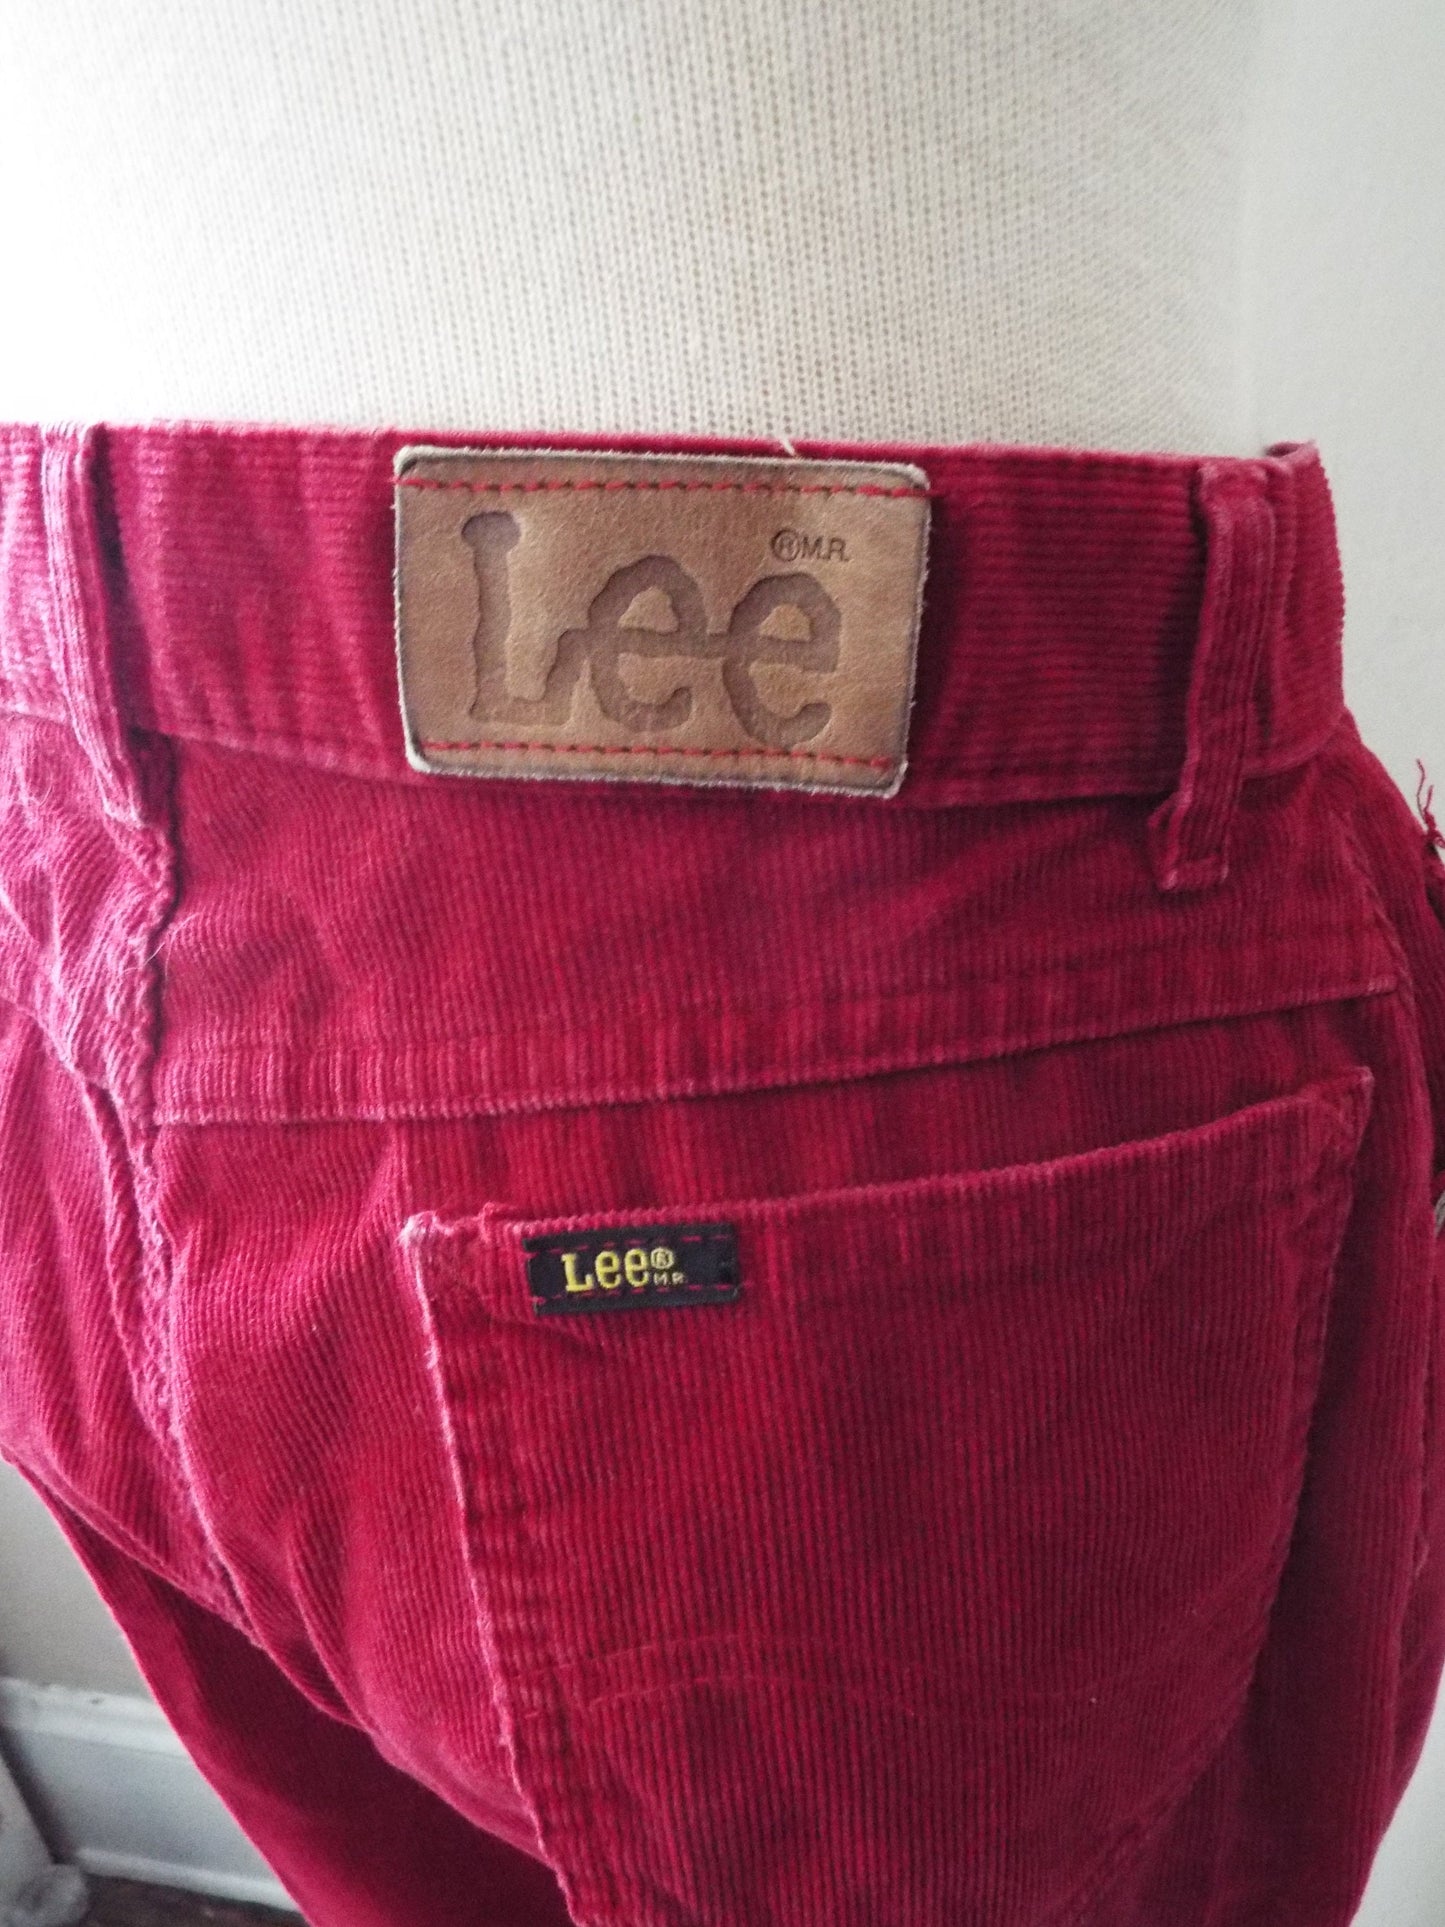 Vintage Deep Red Corduroy Pants by Lee